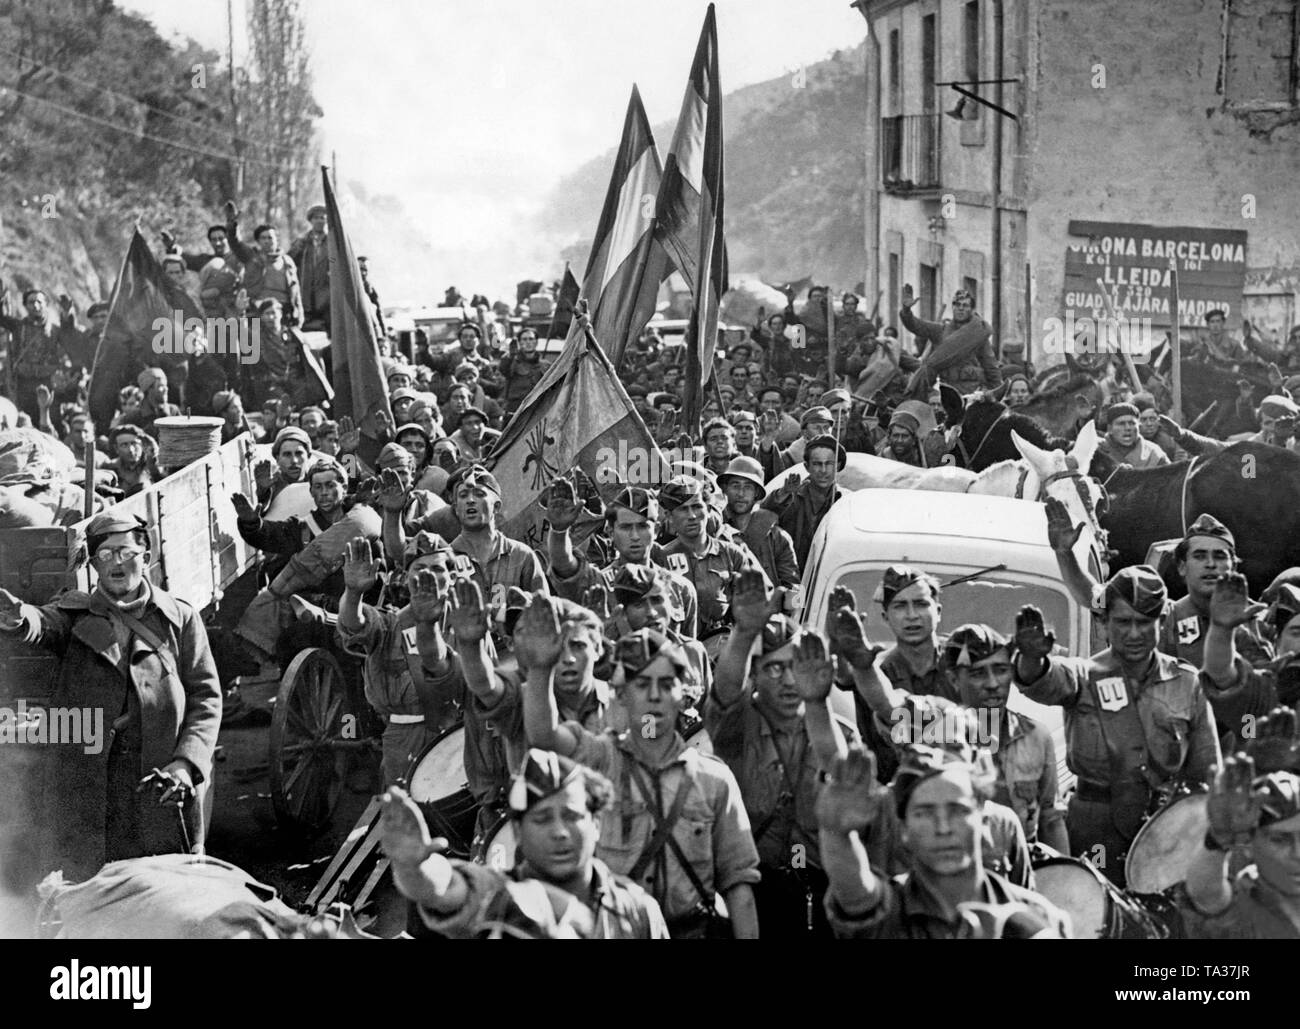 Una unità di truppe franco arrivano sul confine Spanish-French in Le Perthus il 10 febbraio 1939. I soldati di salutare con il saluto fascista. In fondo è una bandiera del partito fascista (Falange Española Tradicionalista de las JONS). Foto Stock